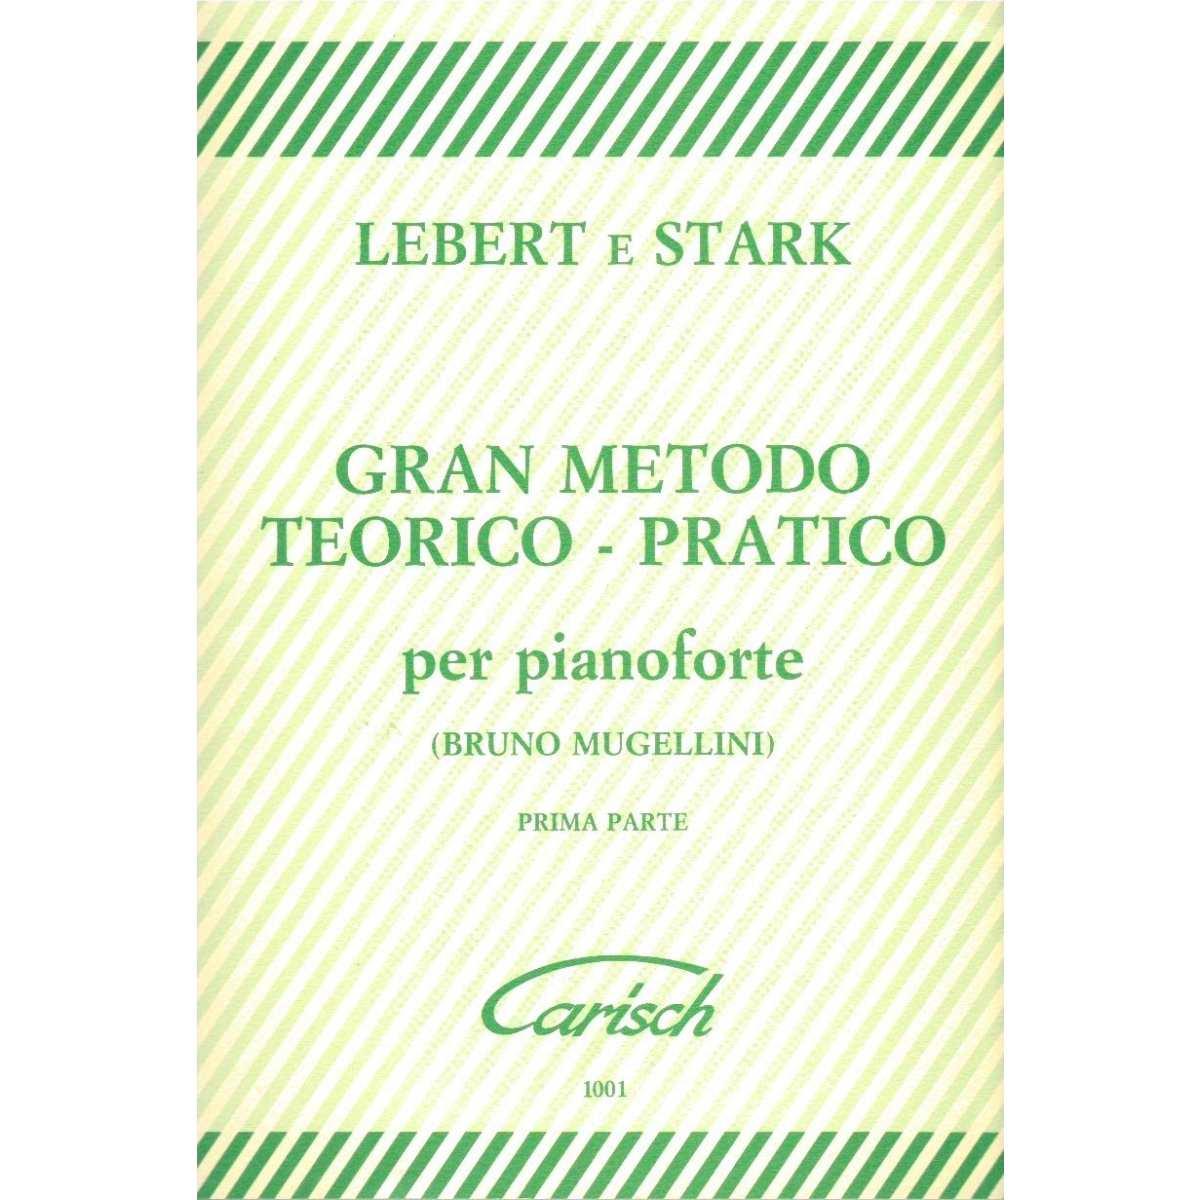 Lebert e stark gran metodo teorico-pratico per pianoforte prima parte, outlet